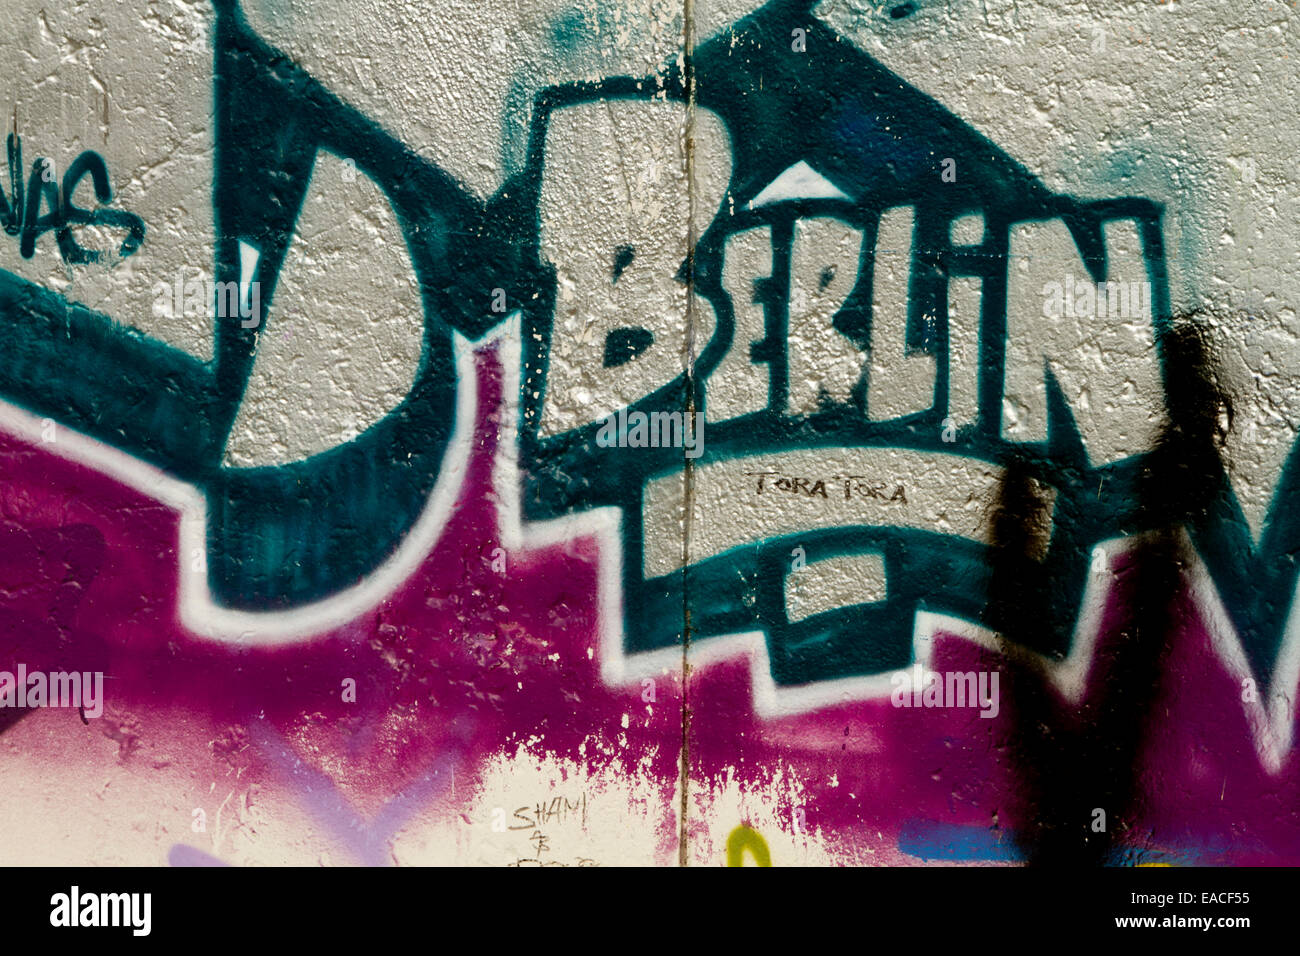 Graffiti street art Berlin wall tags letters Stock Photo